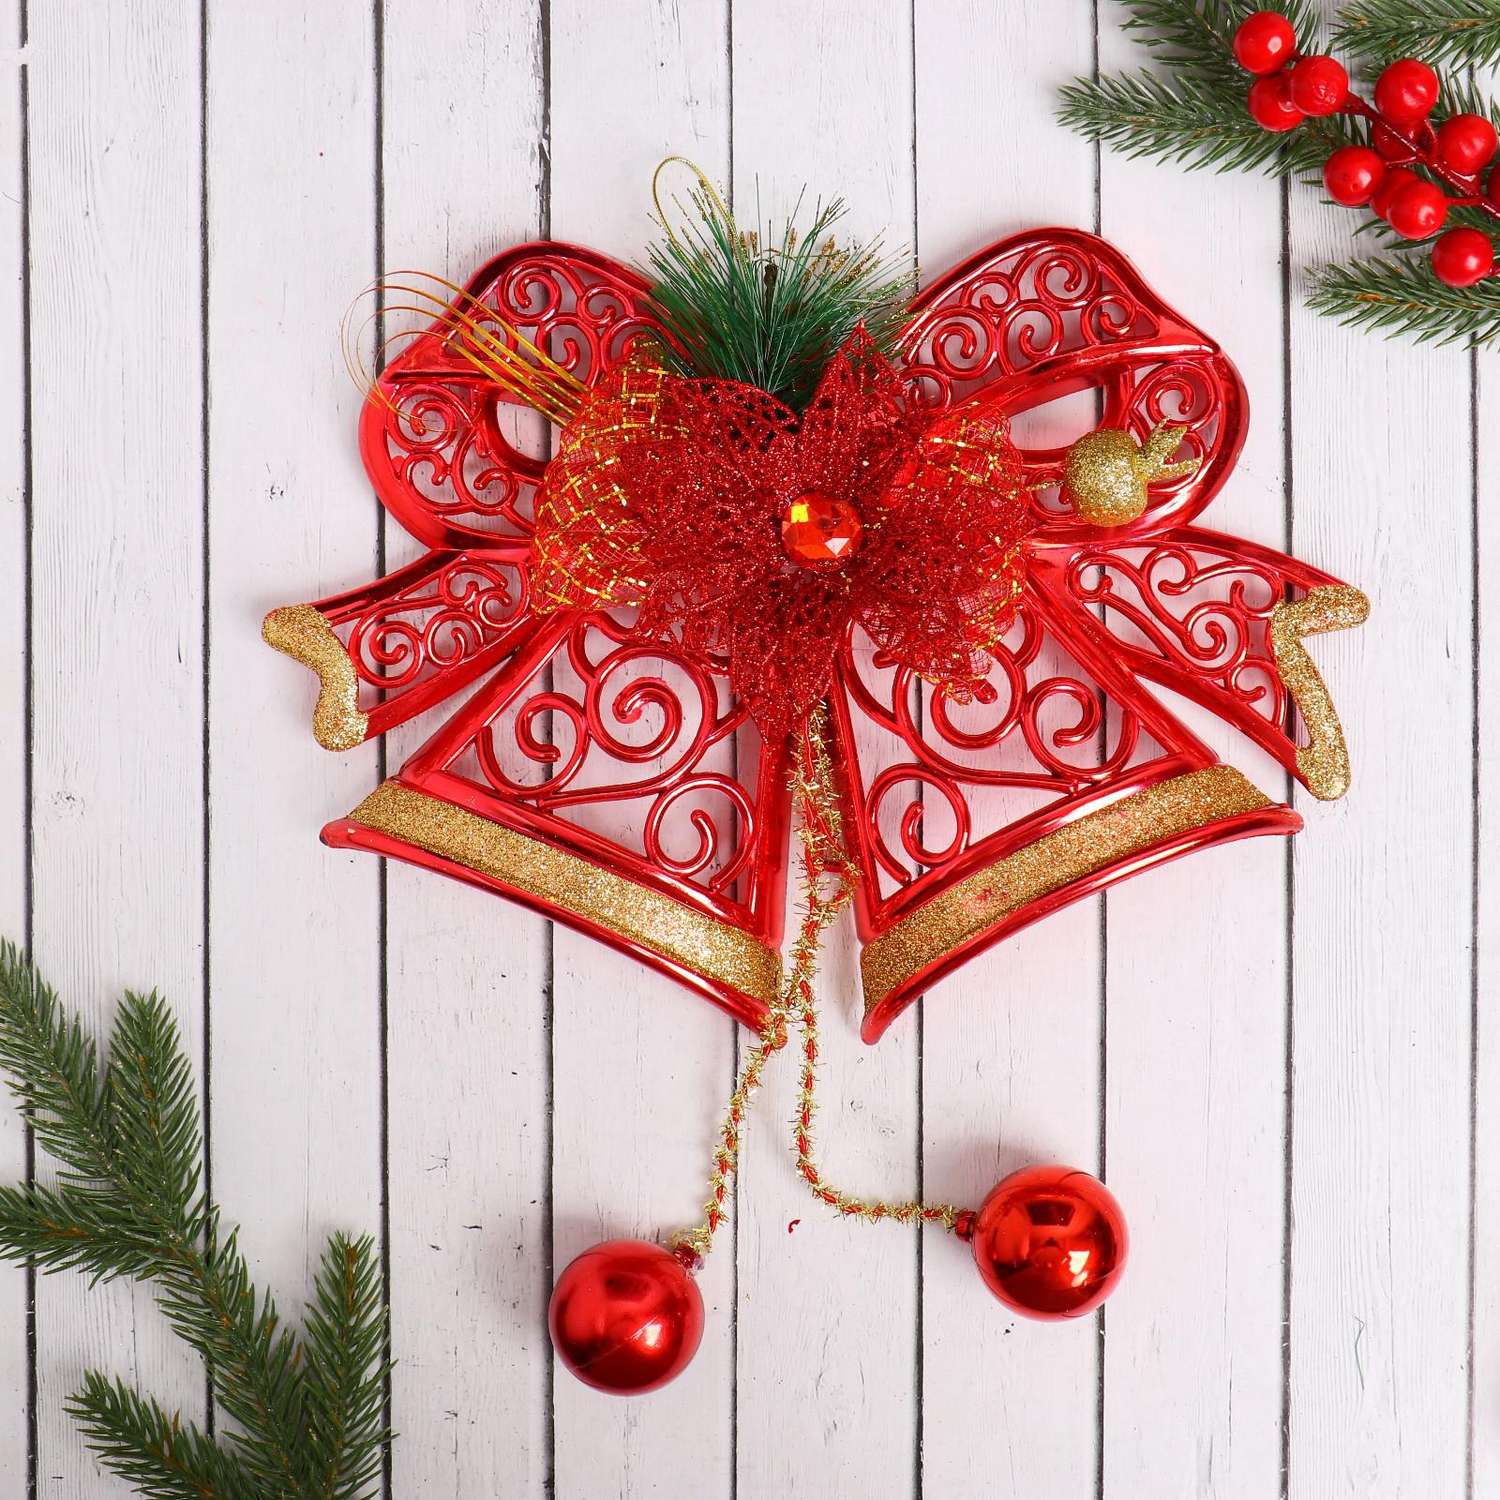 Украшение Зимнее волшебство новогоднее «Колокольчики» алый цветок и узоры 28х21 см красный - фото 1